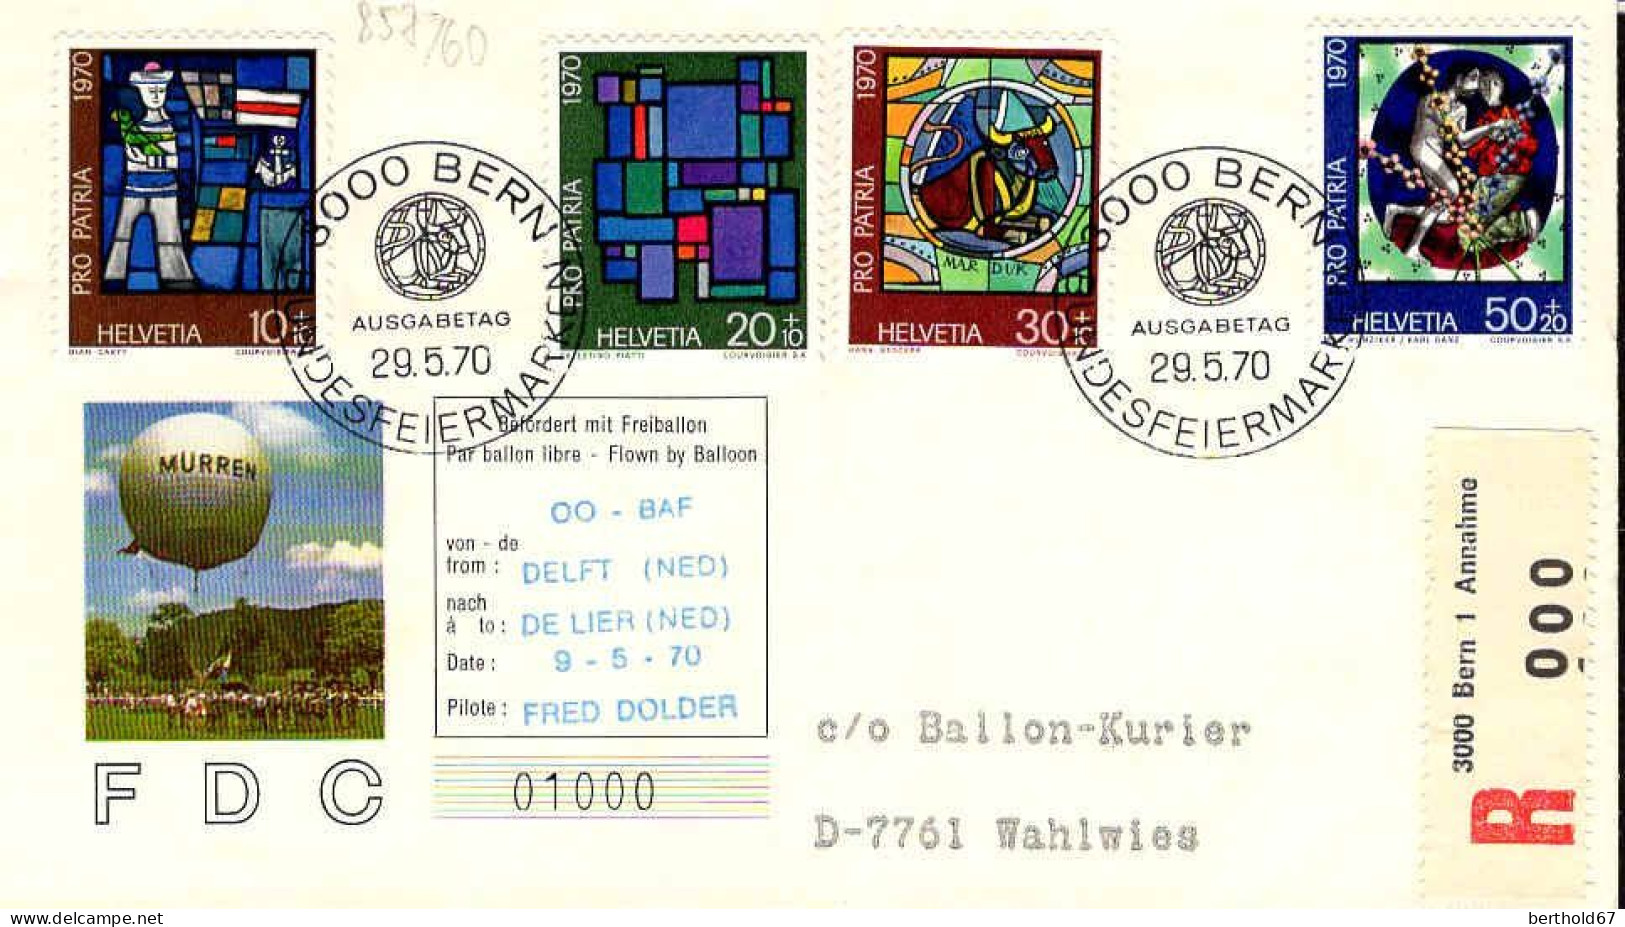 Suisse Poste Obl Yv: 857/860 Pro Patria Vitraux (TB Cachet à Date) Freiballon Fahrt - Covers & Documents